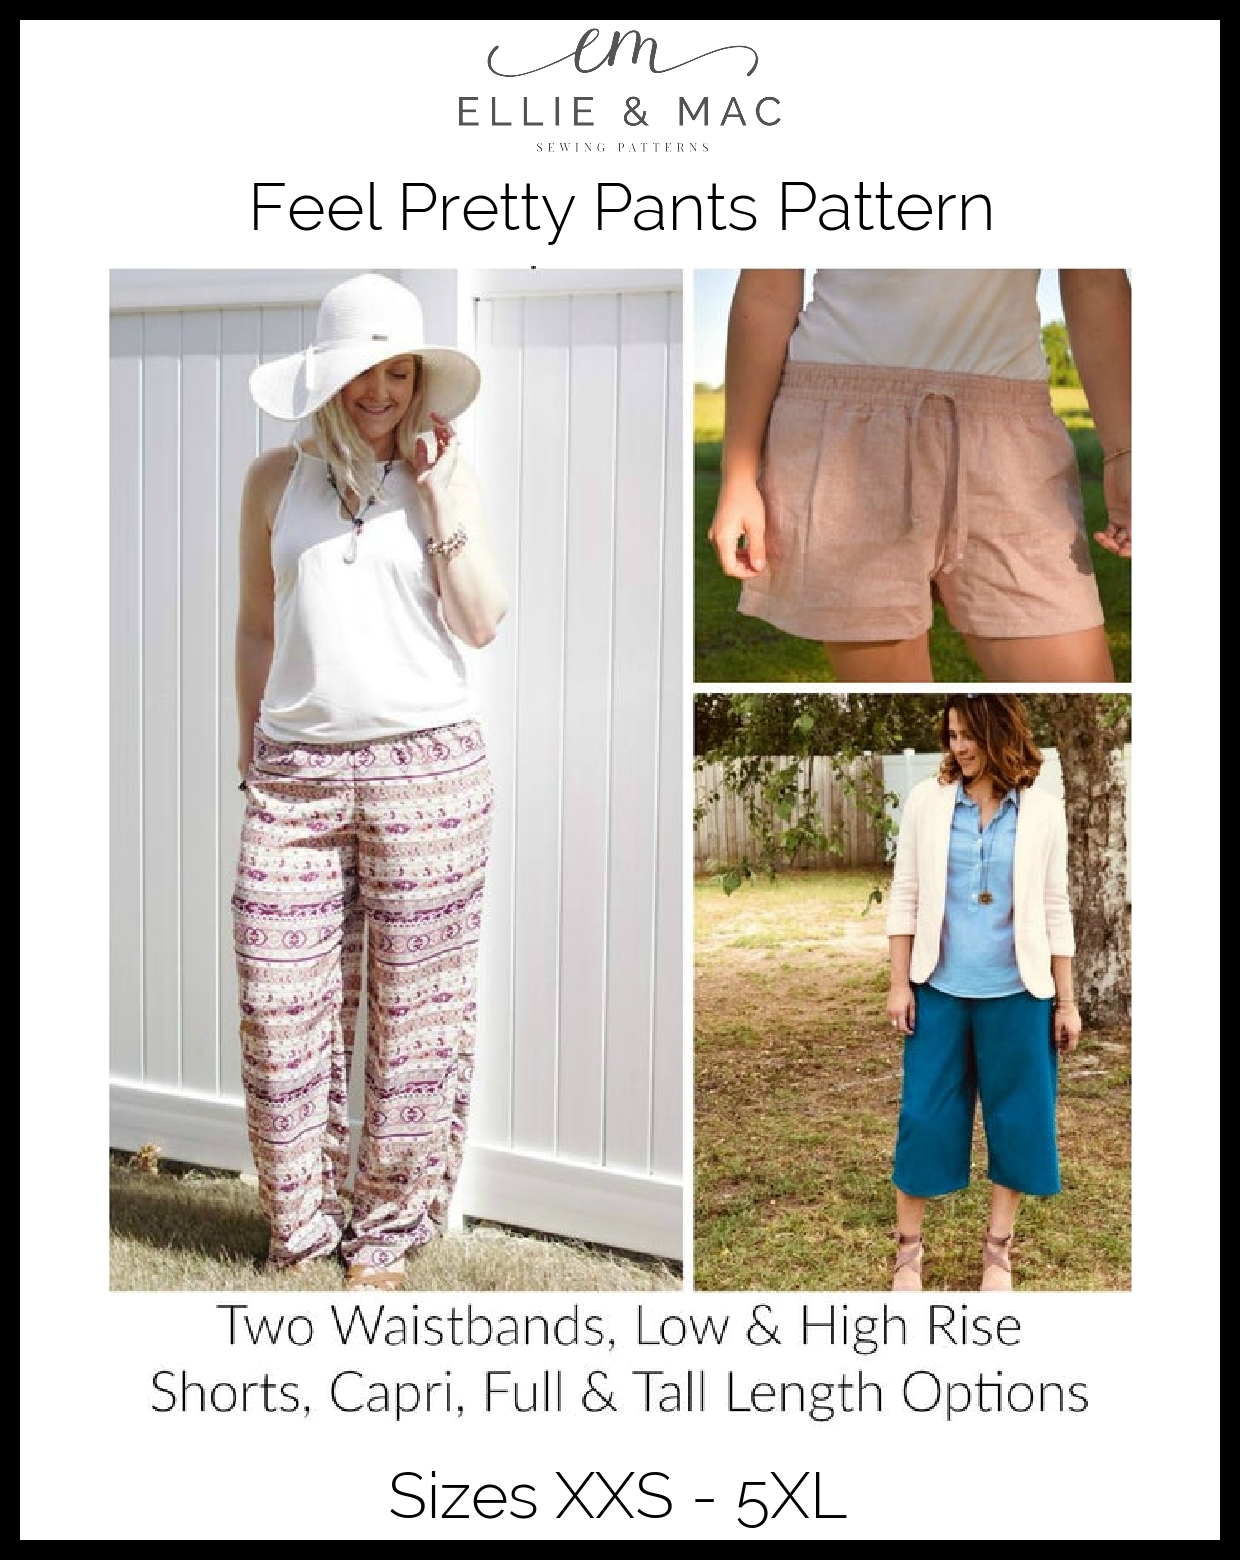 Feel Pretty Pants Pattern